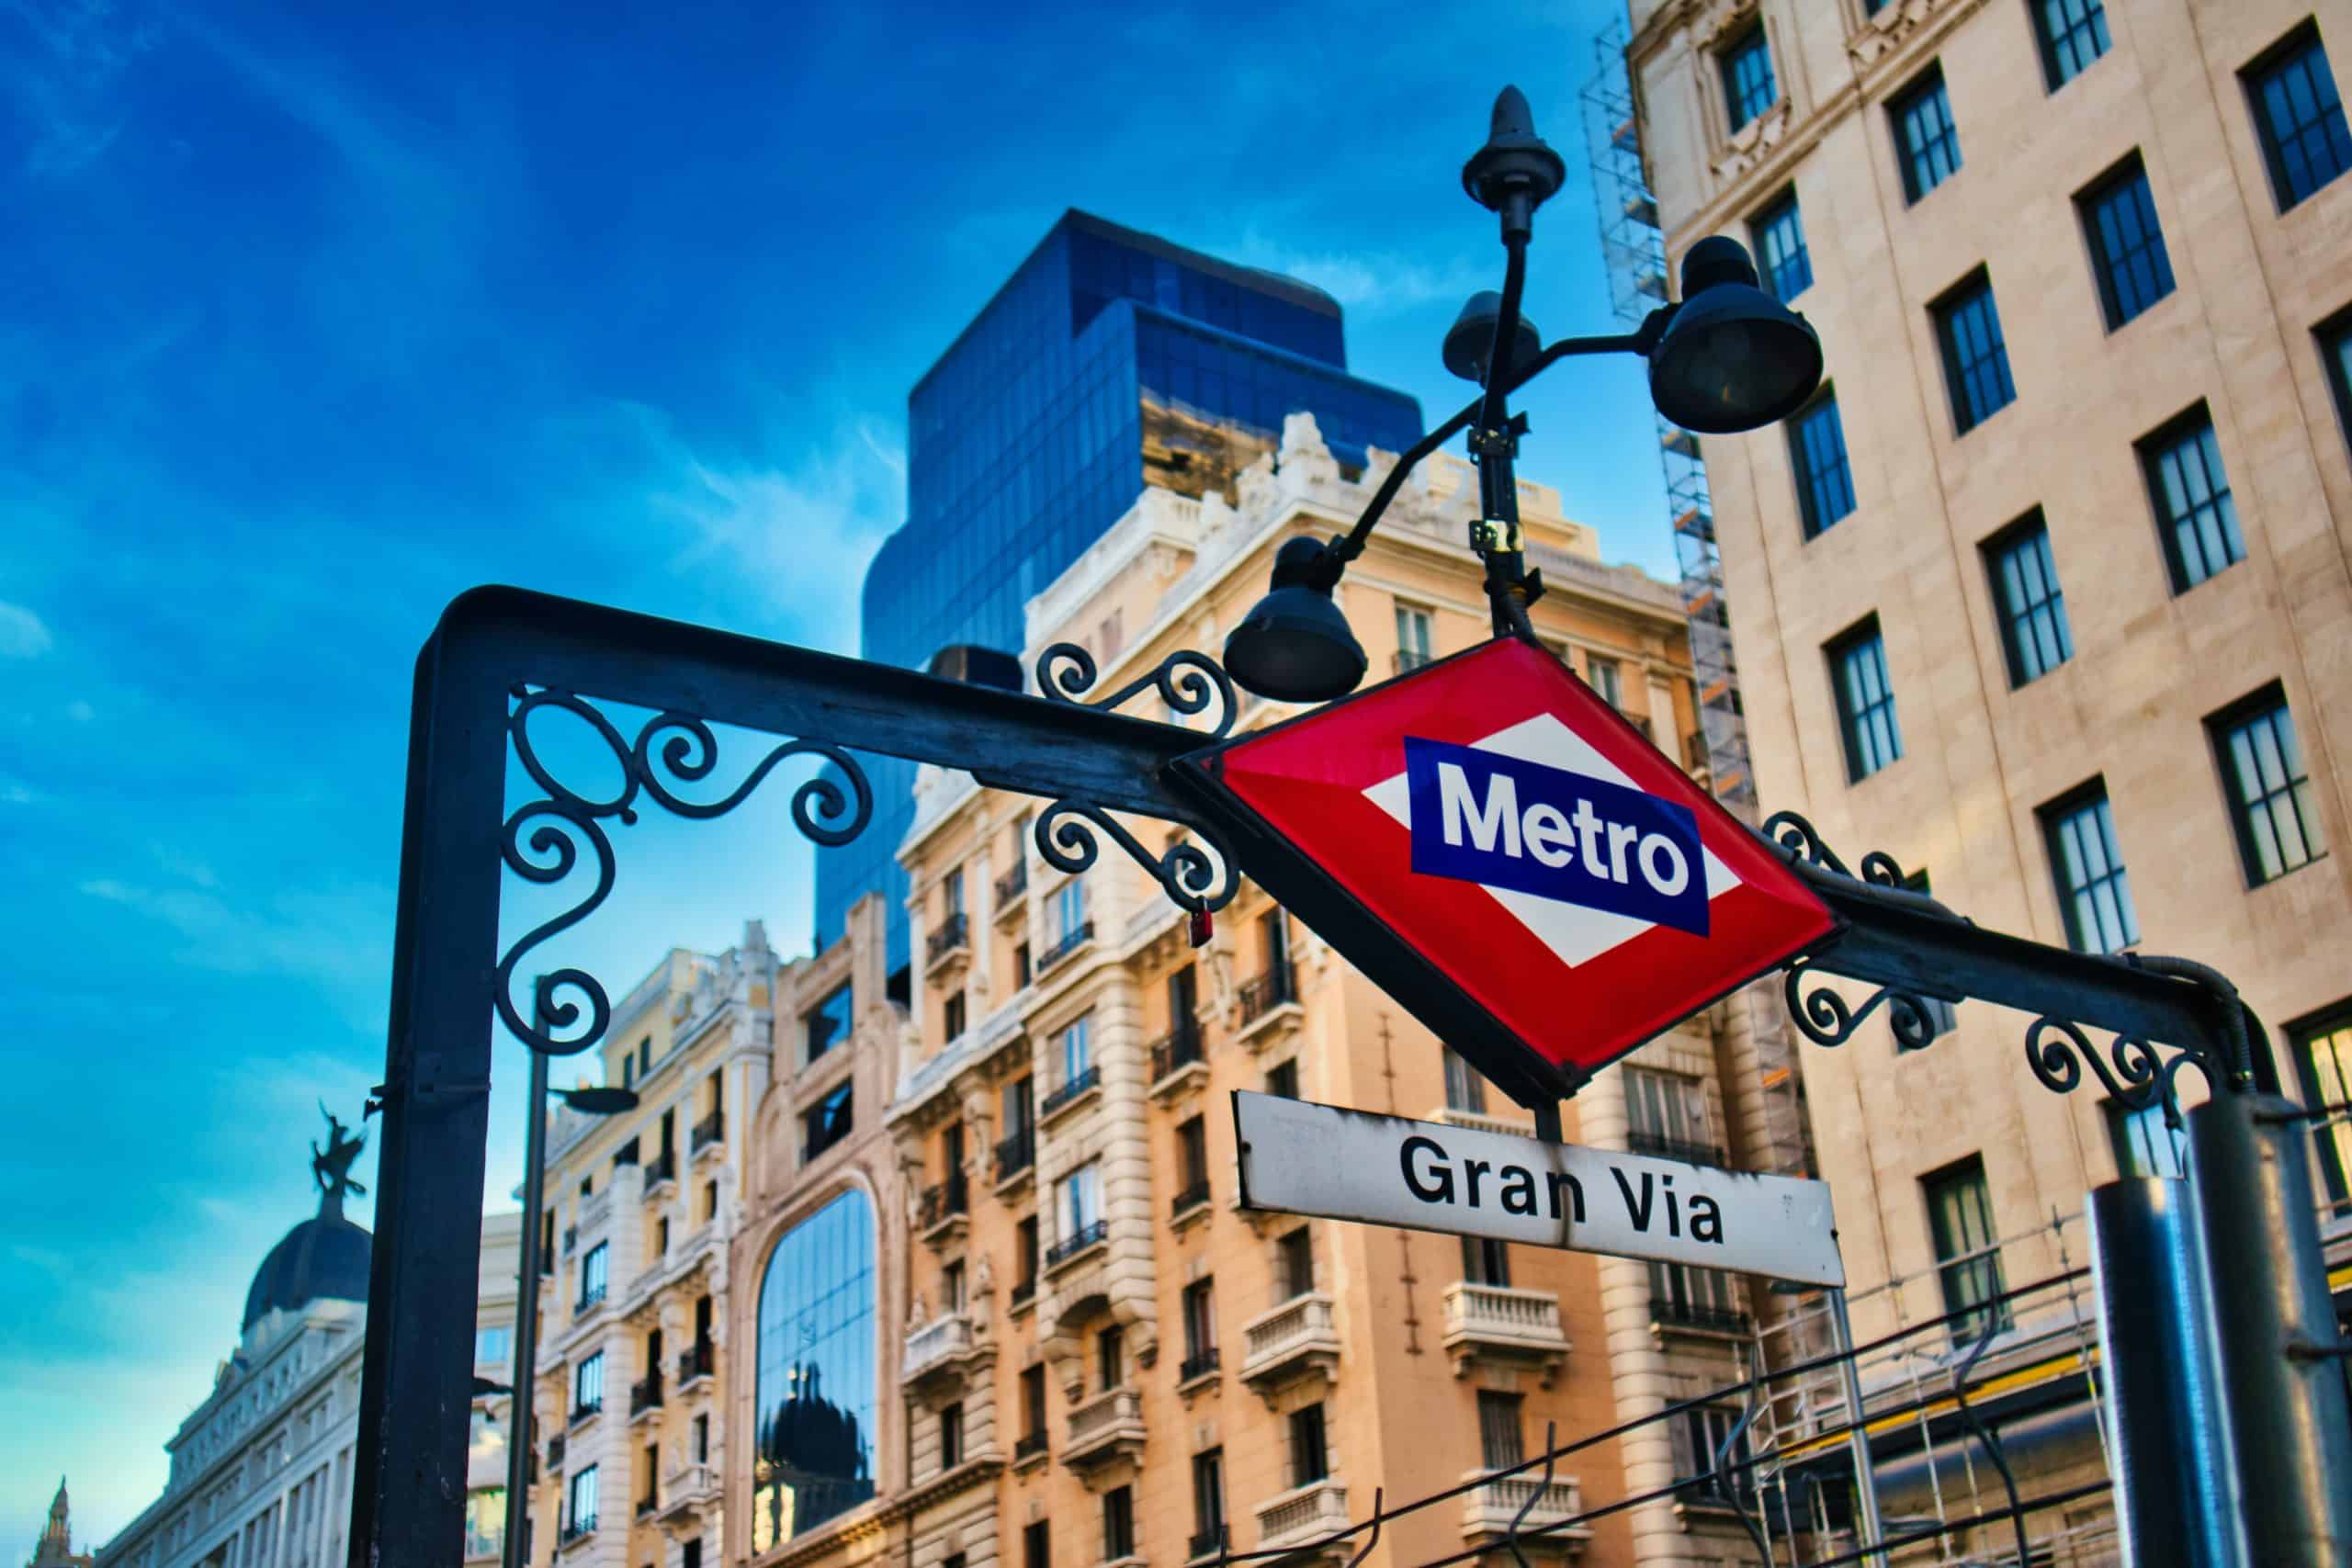 Best things to do in Madrid Spain - Javier Garcia Colomo - Gran Via Metro by Eduardo Rodriguez on Unsplash